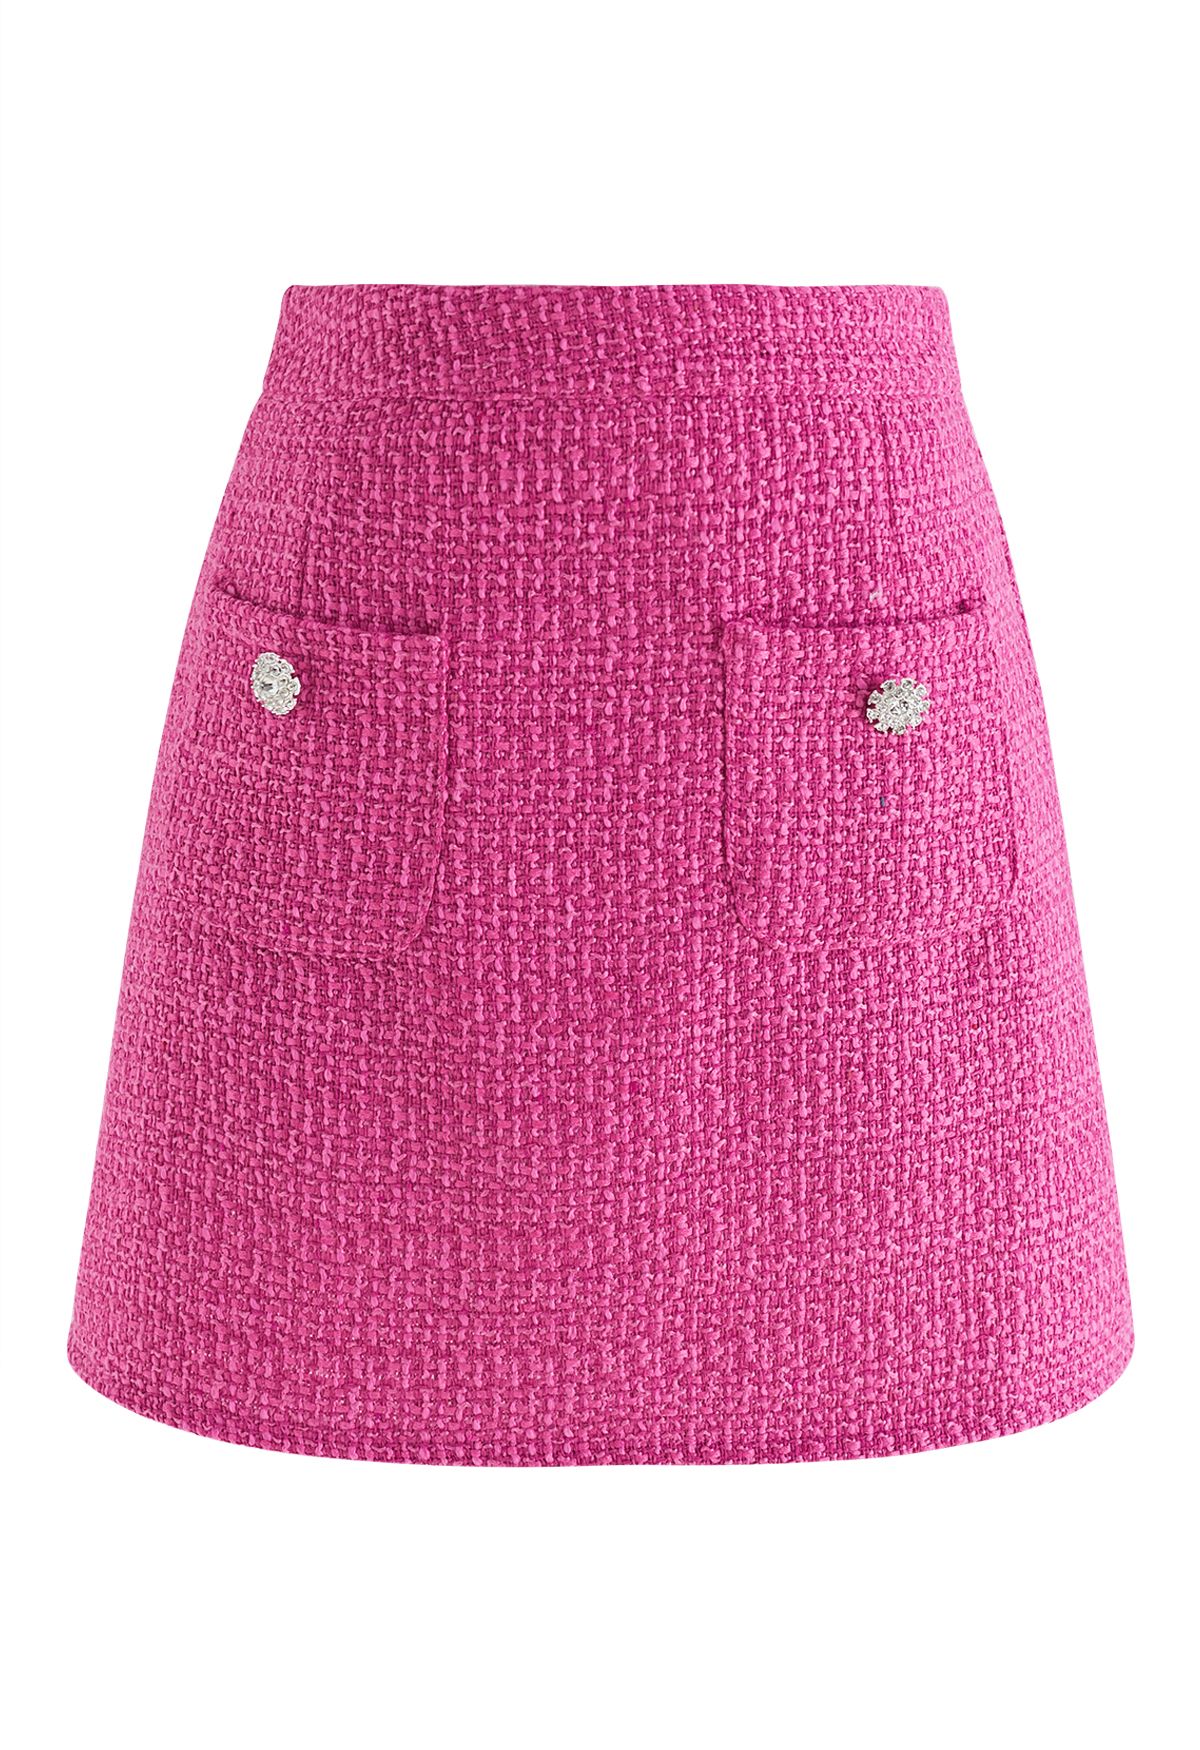 Minifalda pantalón de tweed Glaring Snowflake en rosa intenso